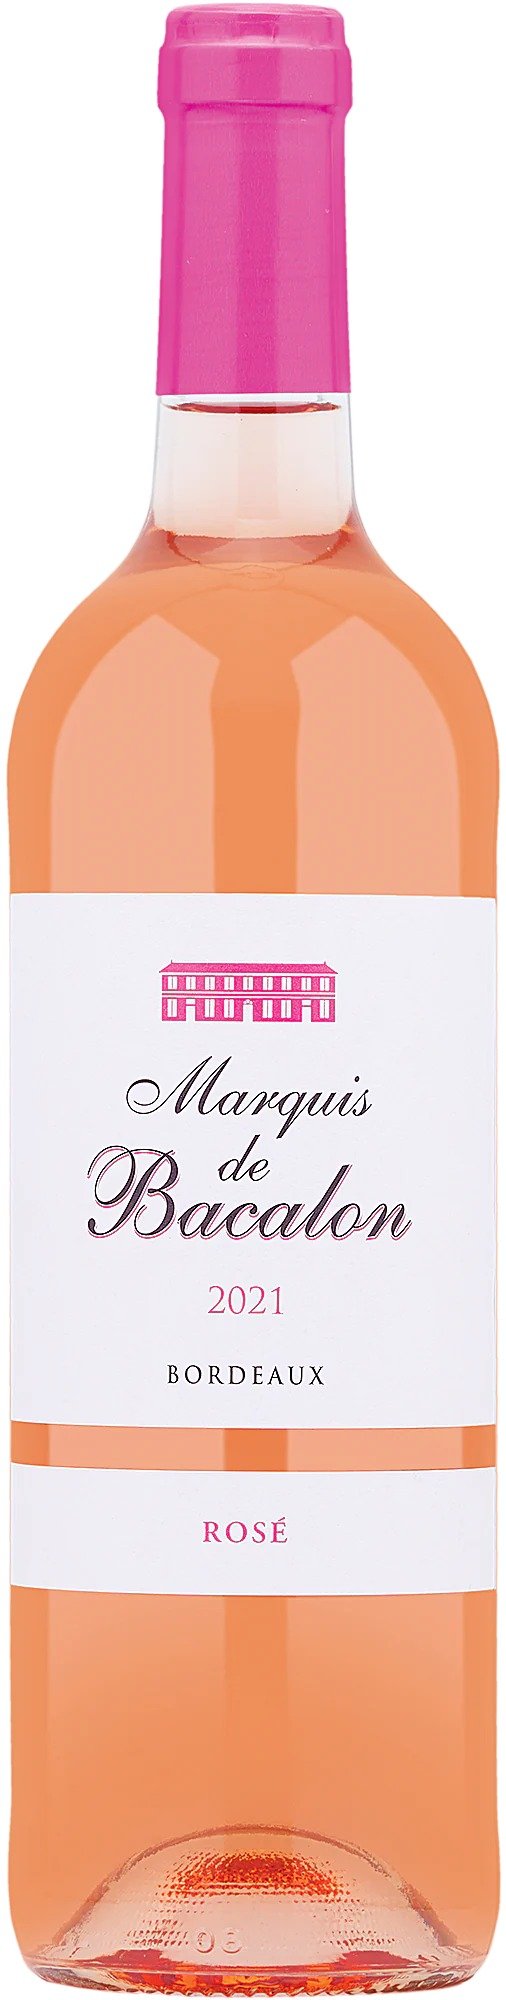 2021 Marquis de Bacalon Bordeaux Rose